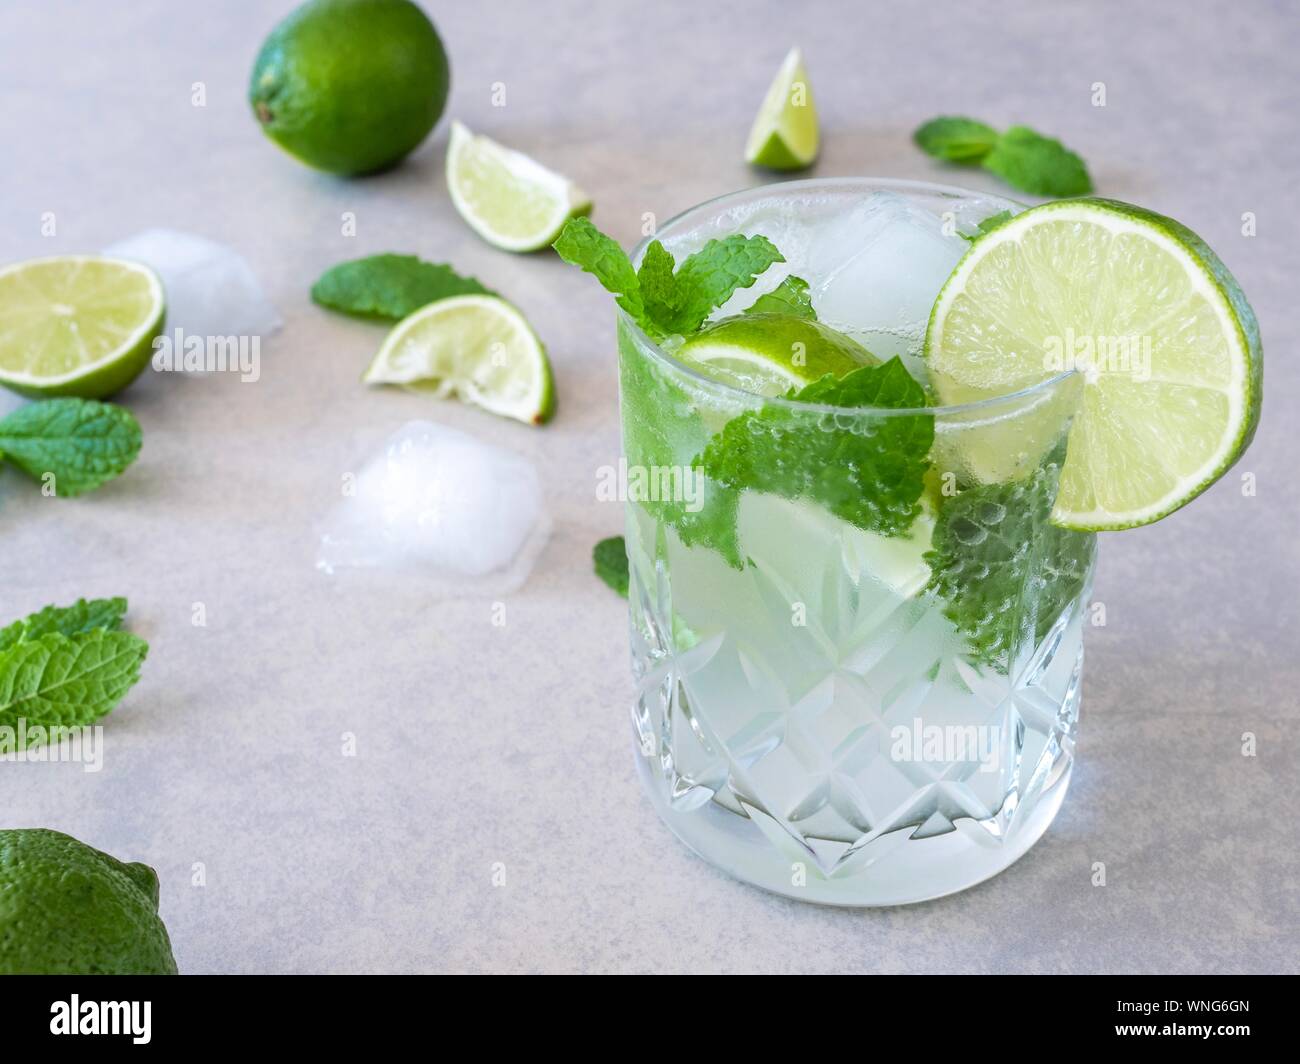 Un mojito cocktail à base de menthe et citron vert dans un verre Tumbler  coupe contre un fond clair Photo Stock - Alamy